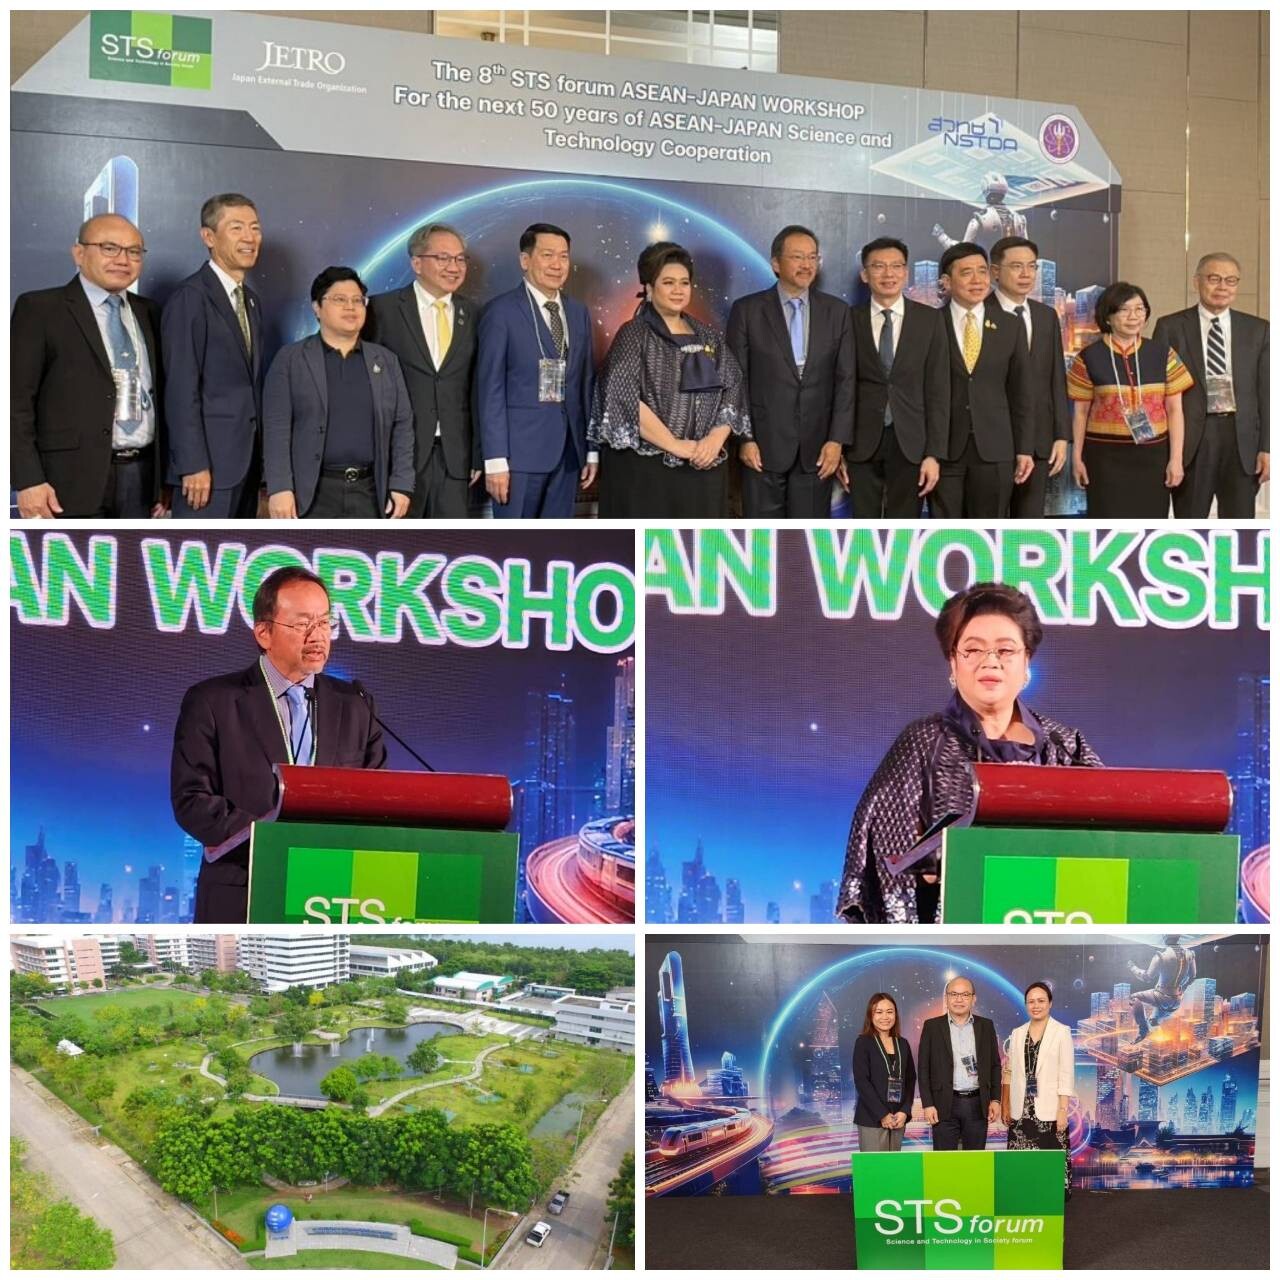 วว. มุ่งสร้างเครือข่ายความร่วมมือระหว่างประเทศ พร้อมผลักดันการพัฒนาวิทยาศาสตร์เทคโนโลยีที่ยั่งยืน ในการประชุมเชิงปฏิบัติการ The 8th STS forum ASEAN-Japan Workshop